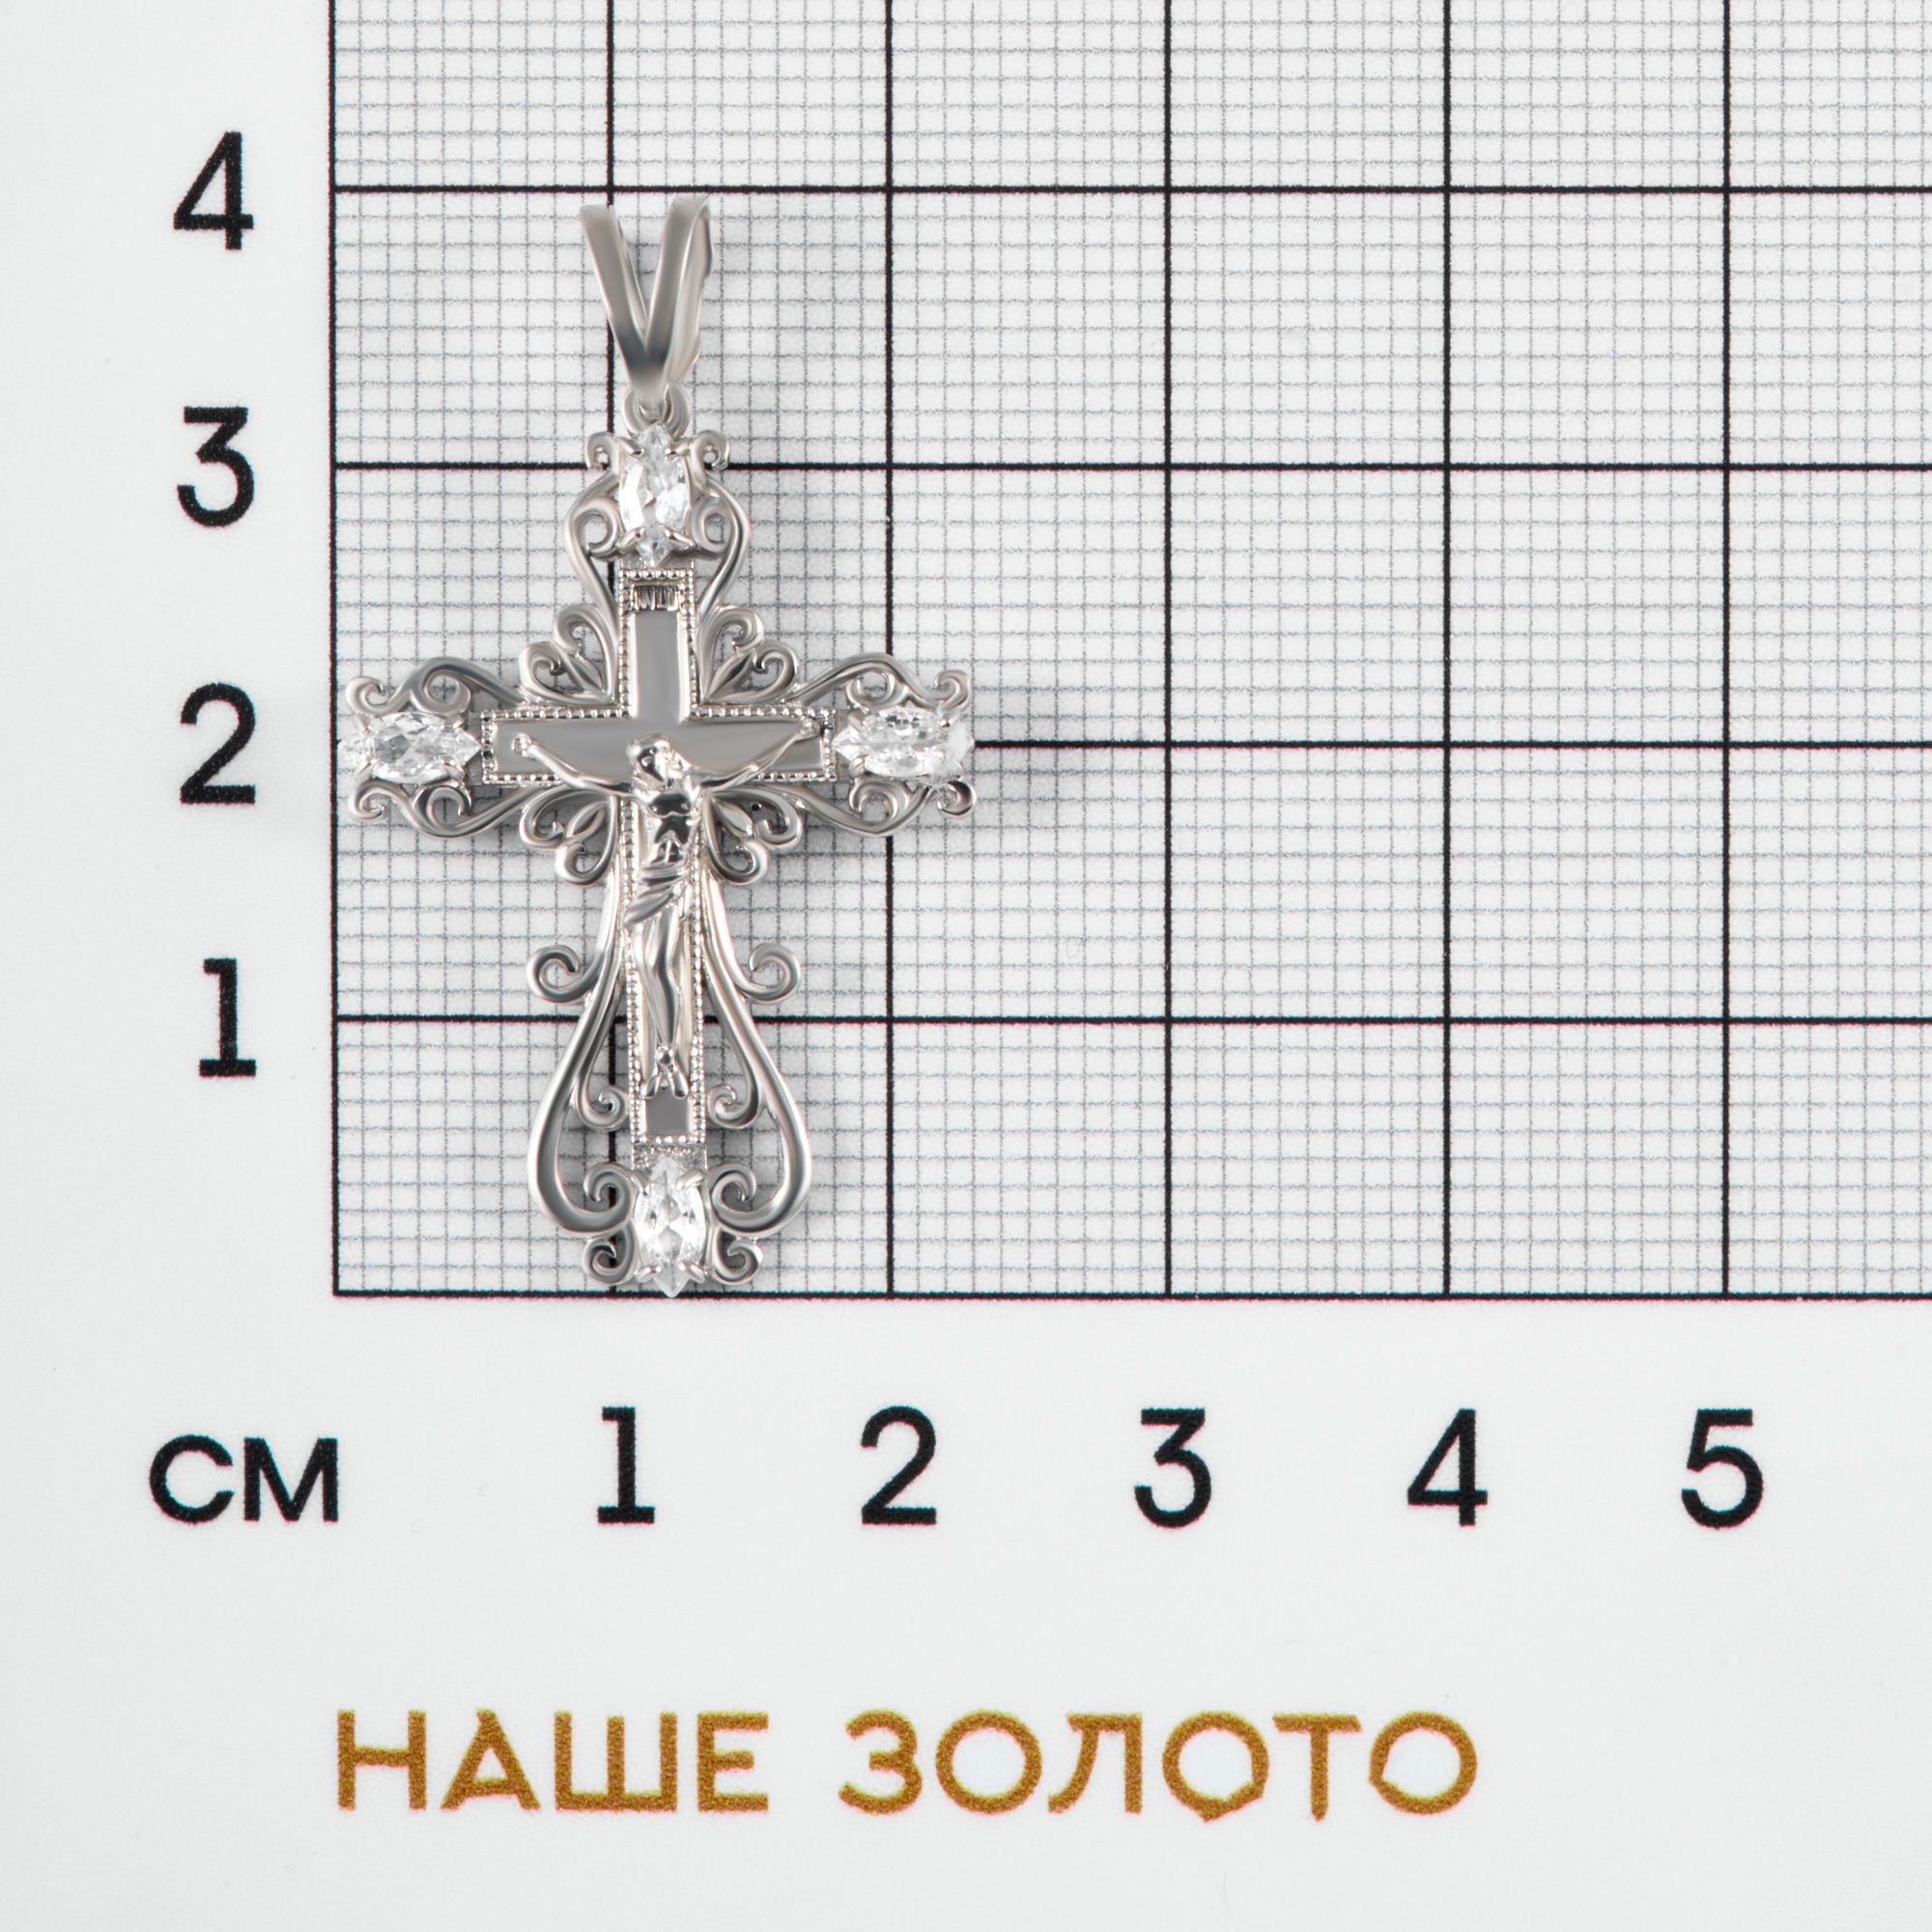 Серебряный крест Рыбин   со вставками (фианит) РЫ3000155С